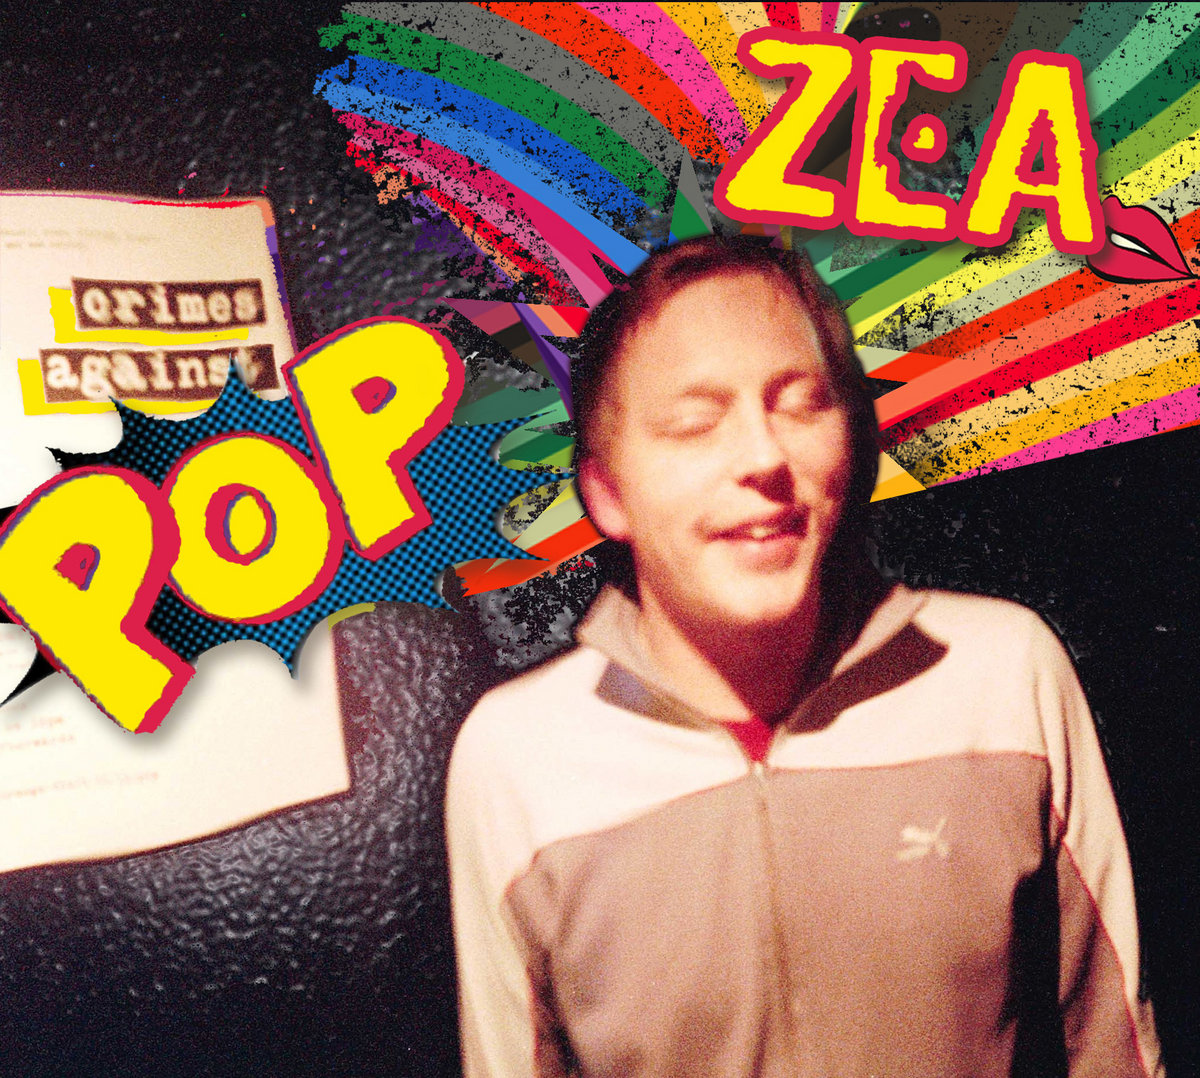 zea crimes against pop